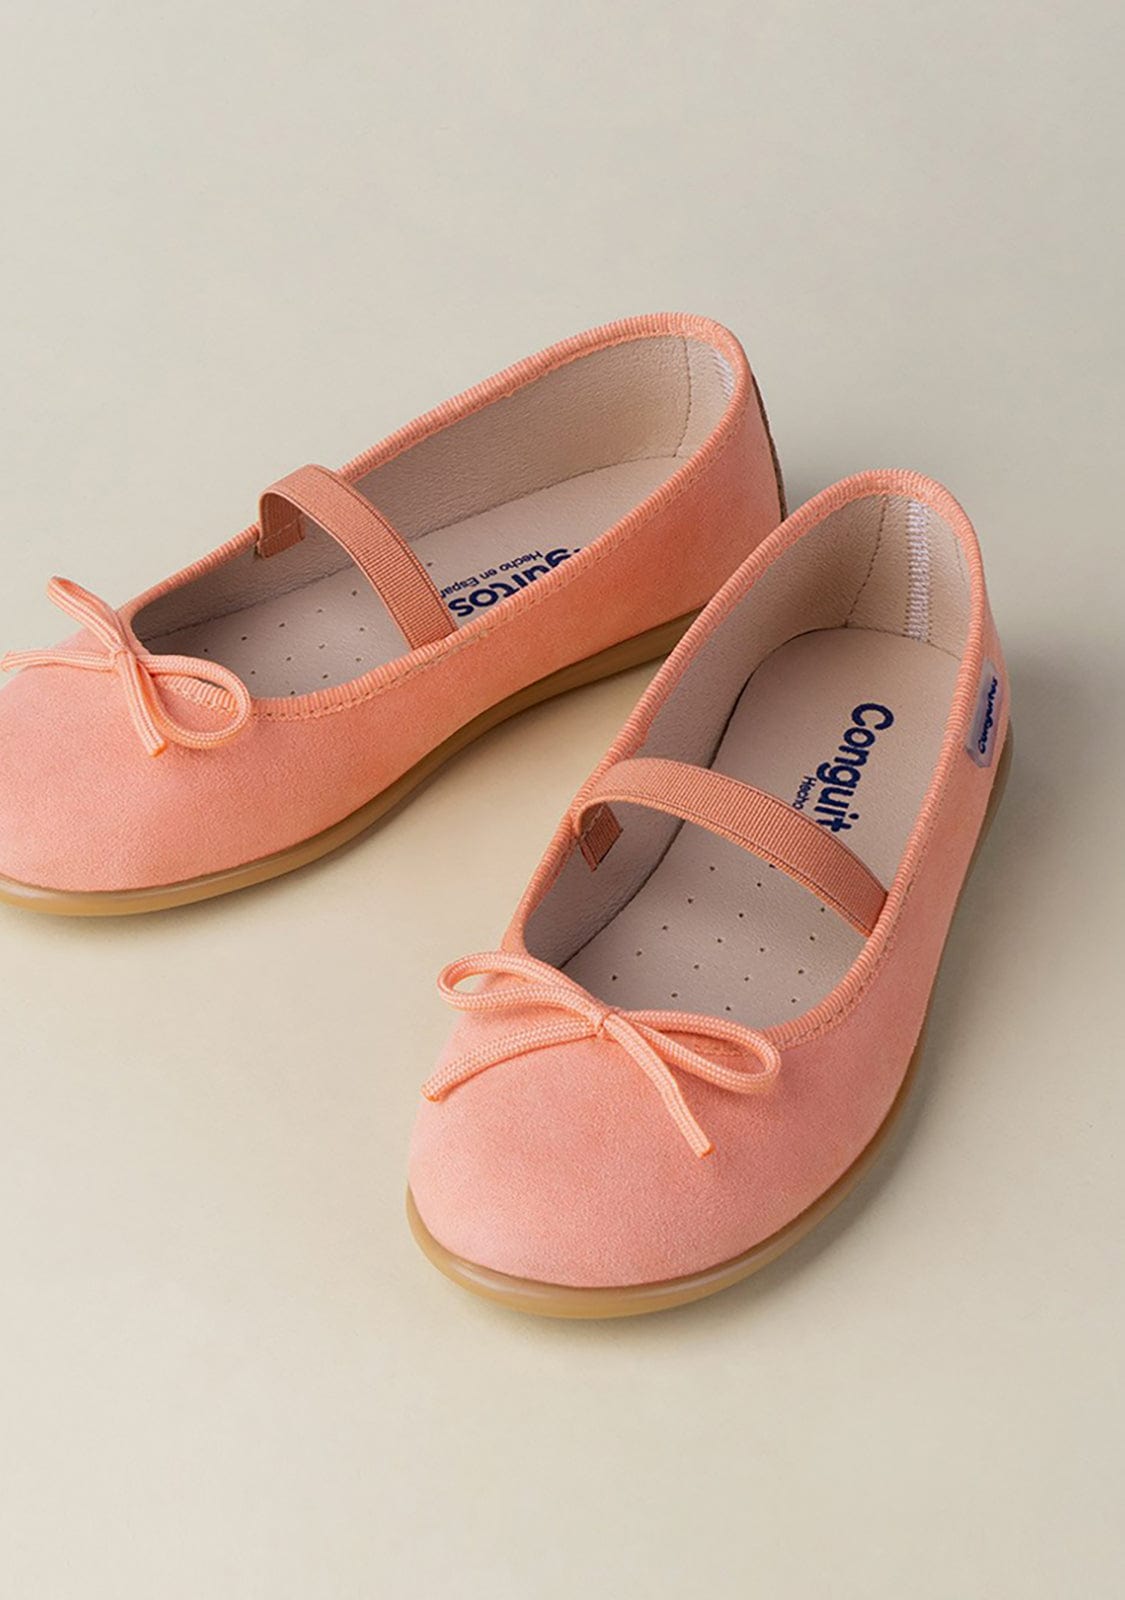 CONGUITOS Shoes Girl’s Coral Basic Ballerinas